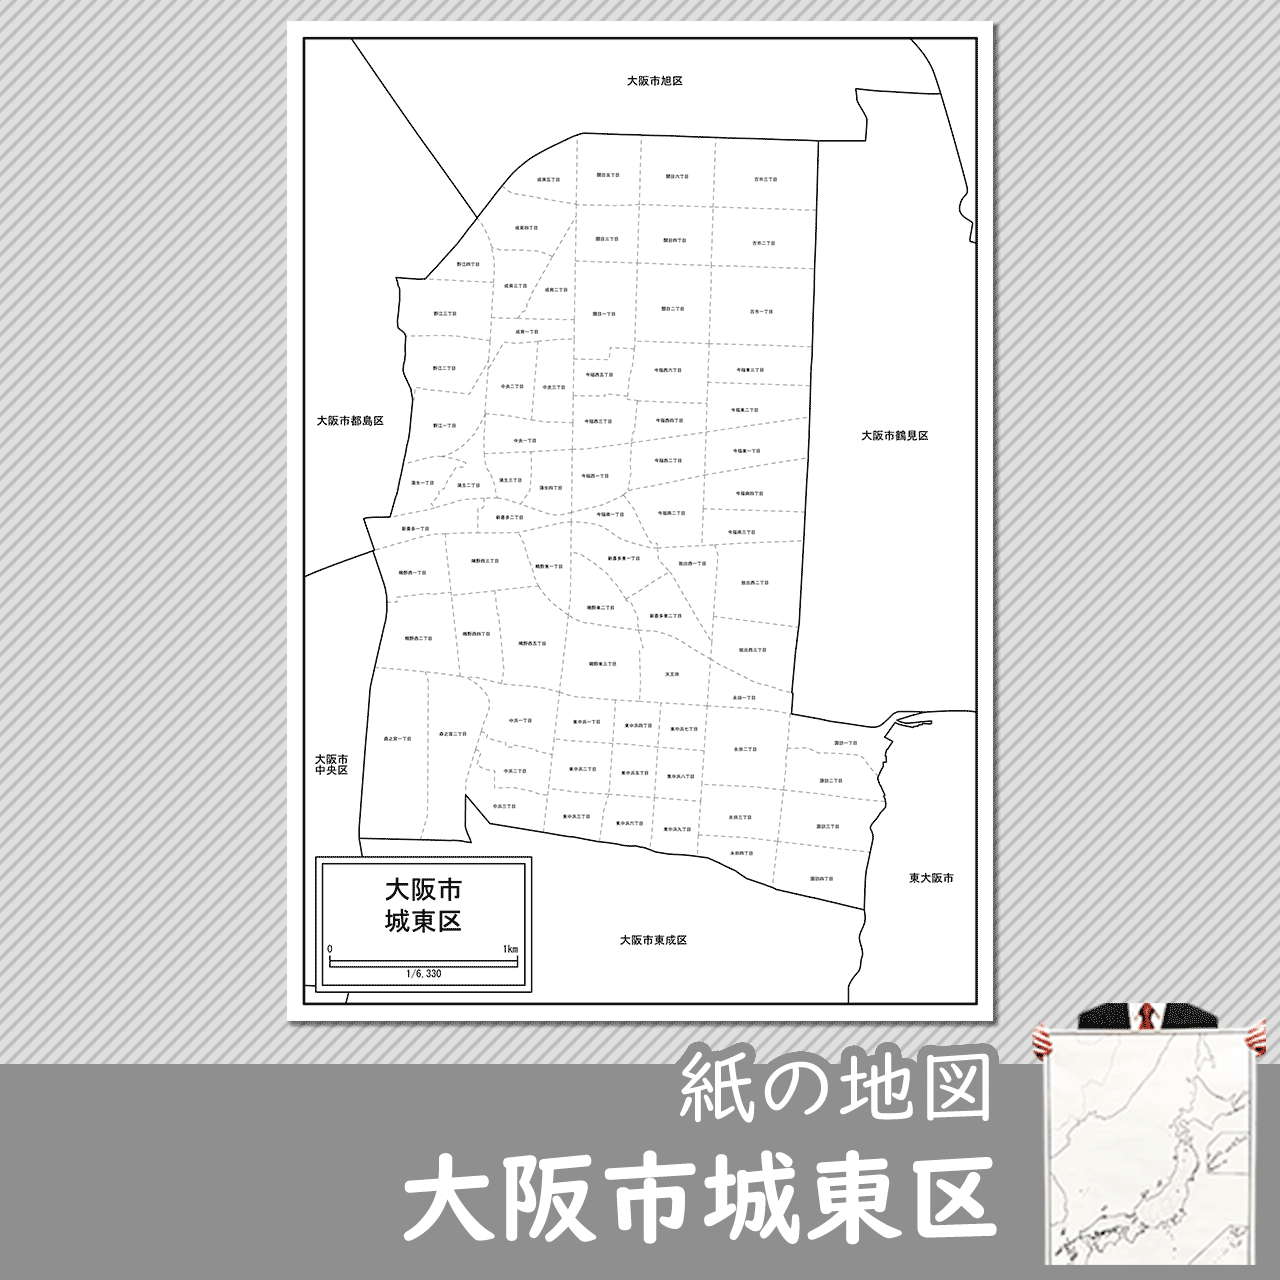 大阪市城東区の紙の白地図のサムネイル